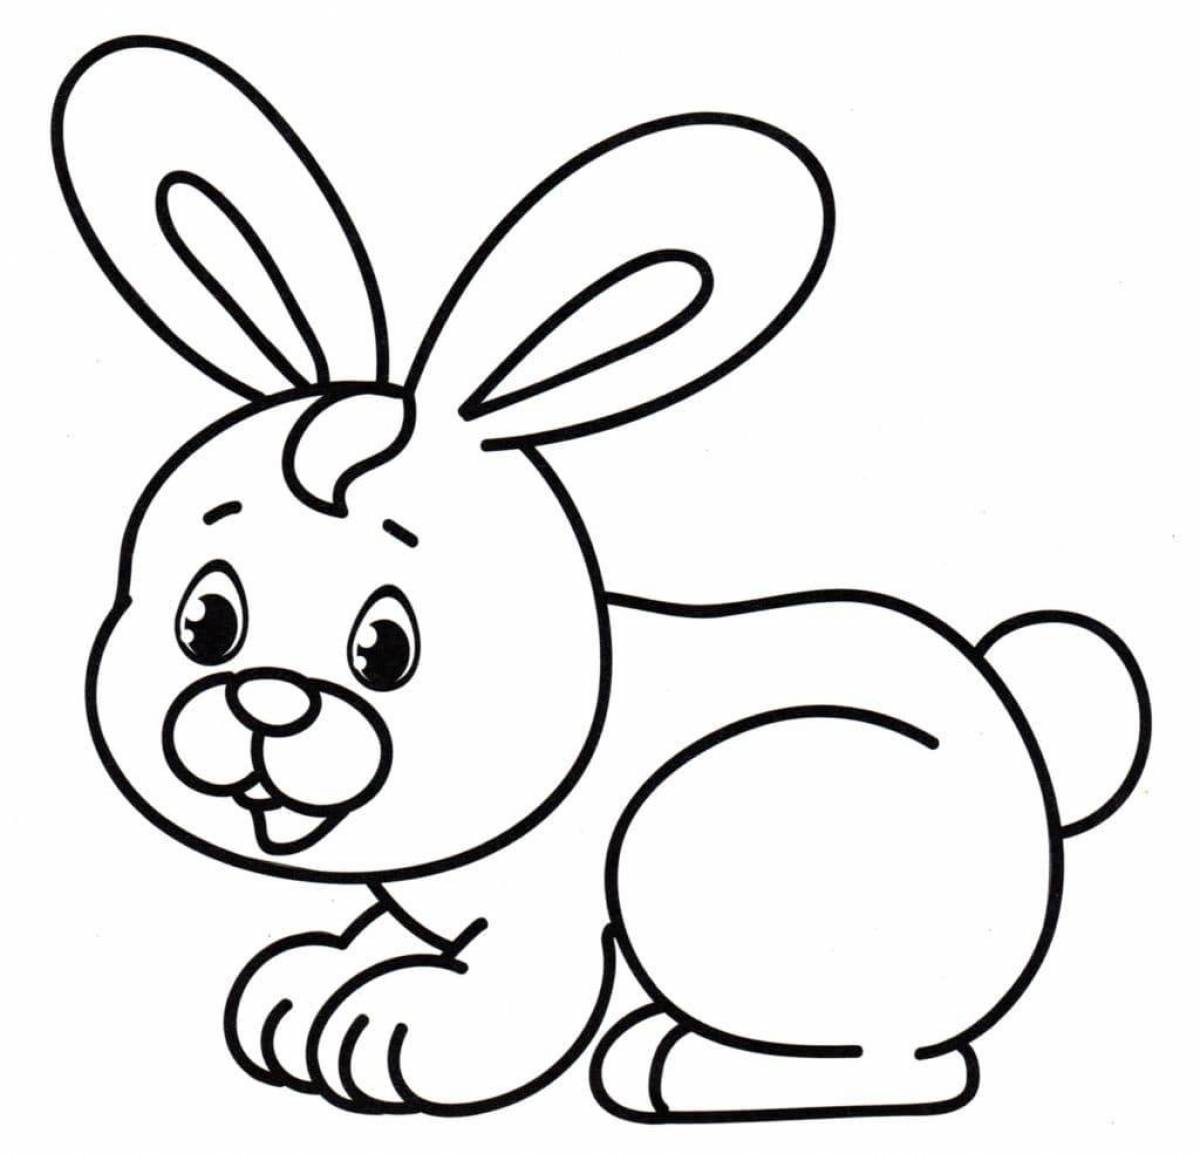 Impressive hare coloring image